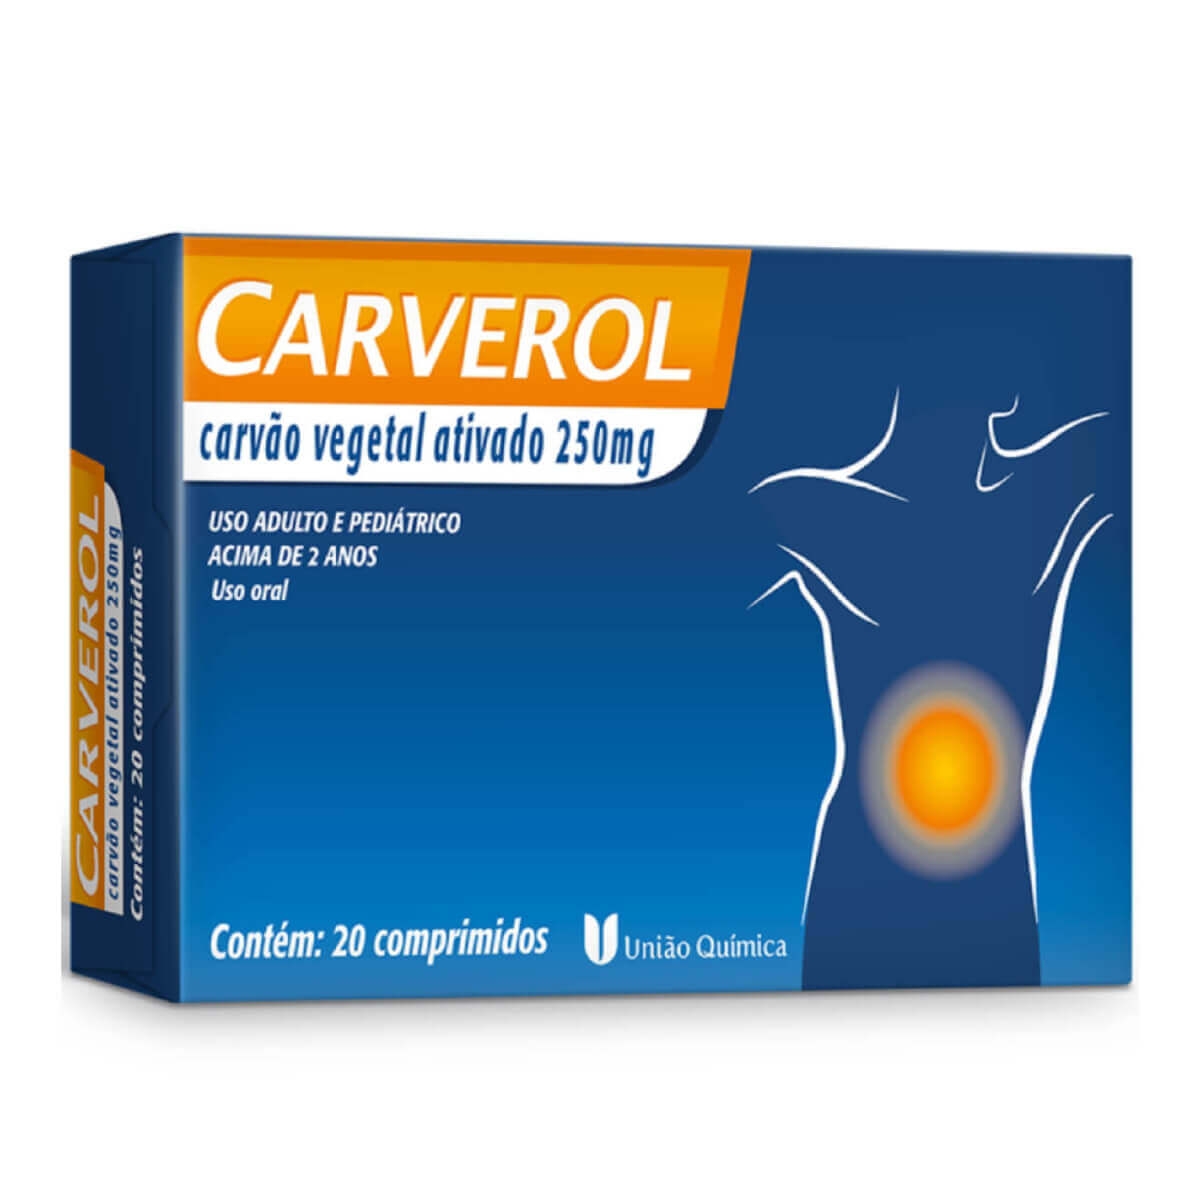 Carverol 250mg União Química 20 Comprimidos